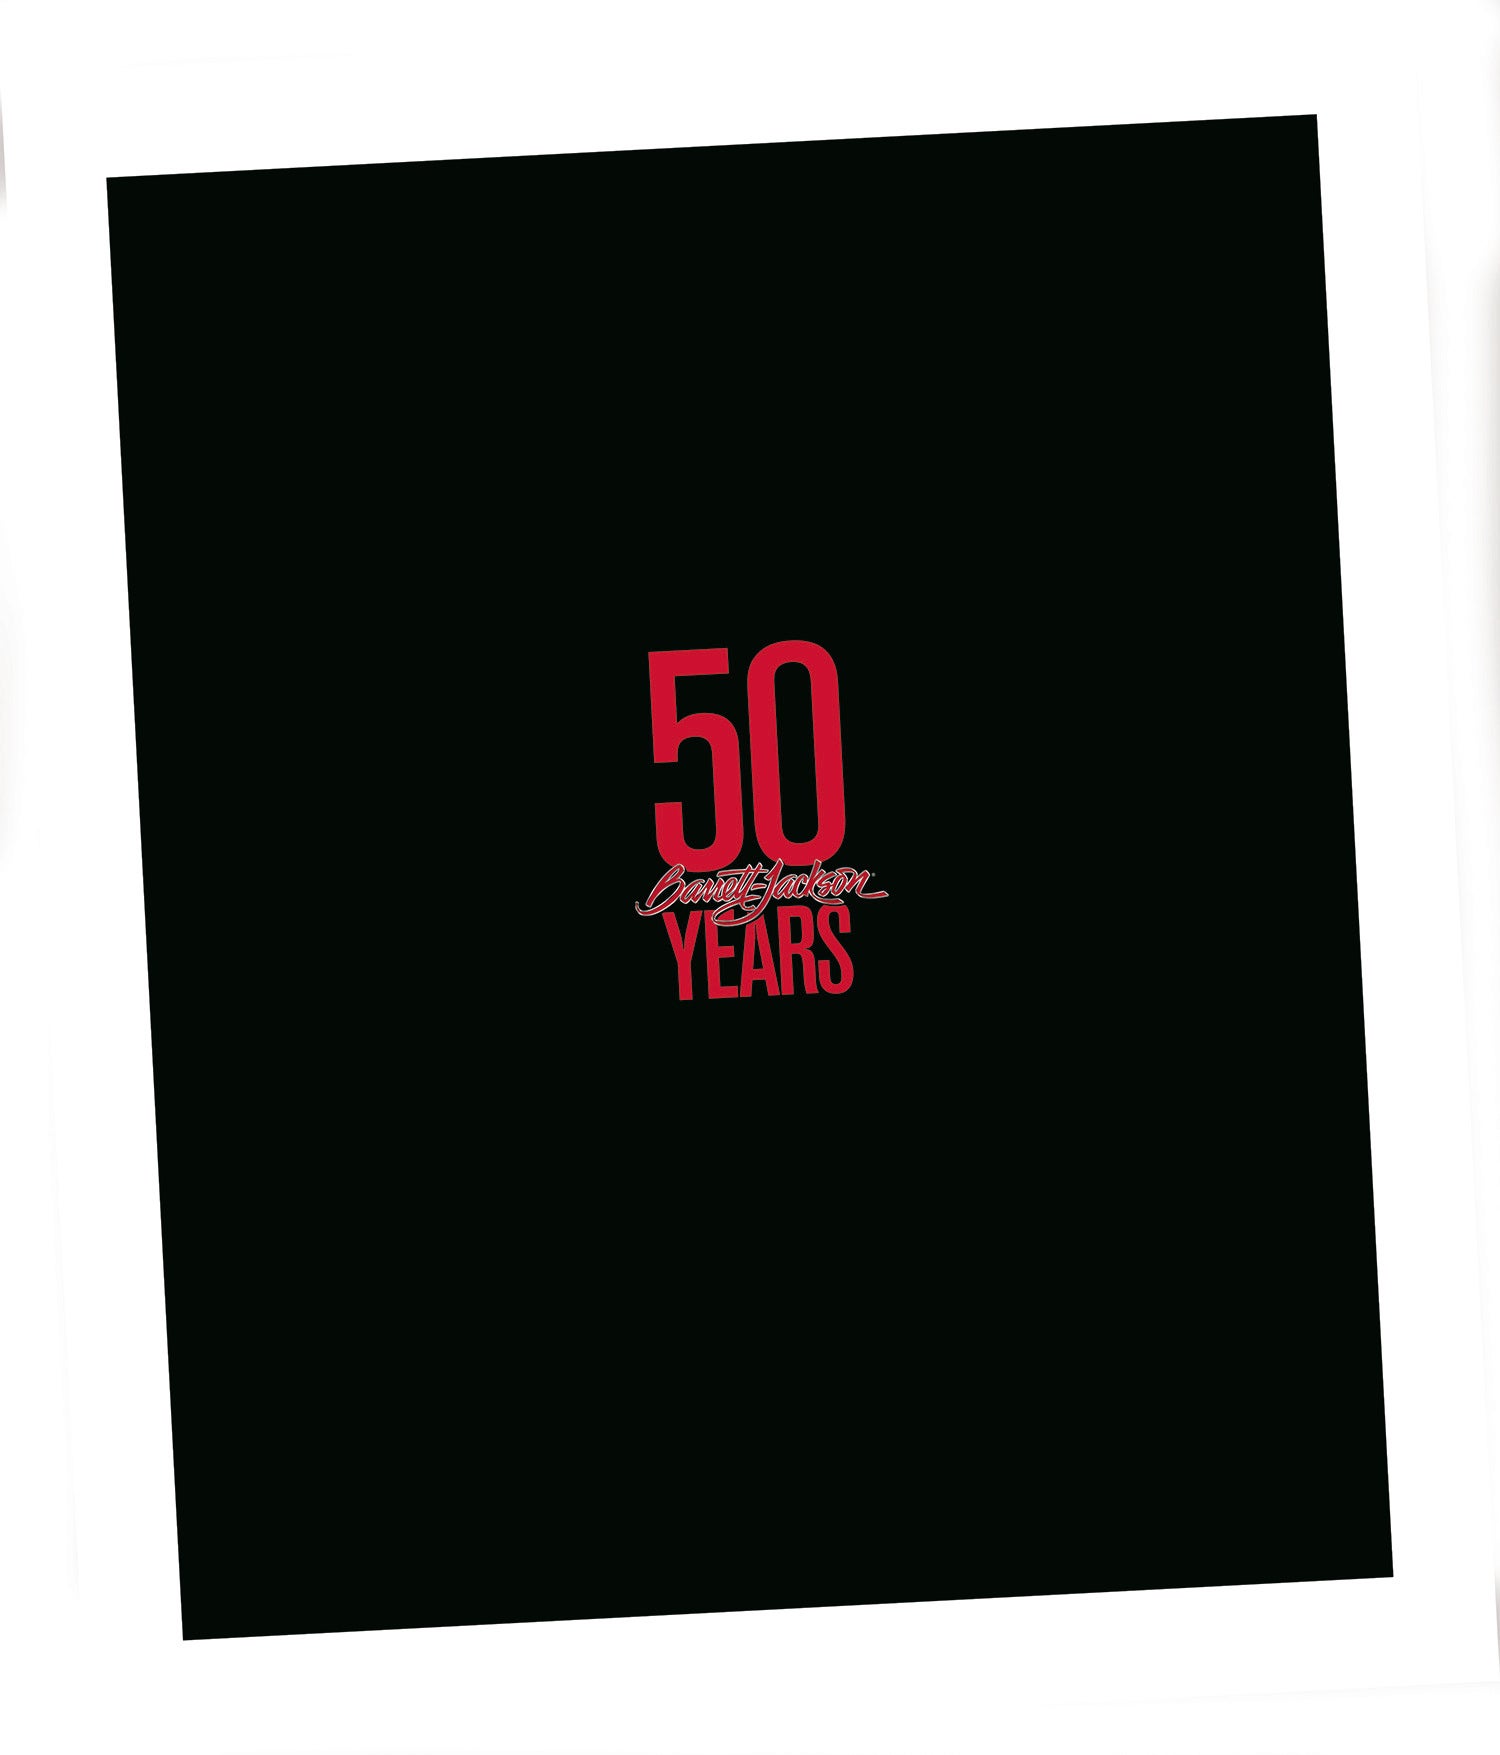 50th anniversary book